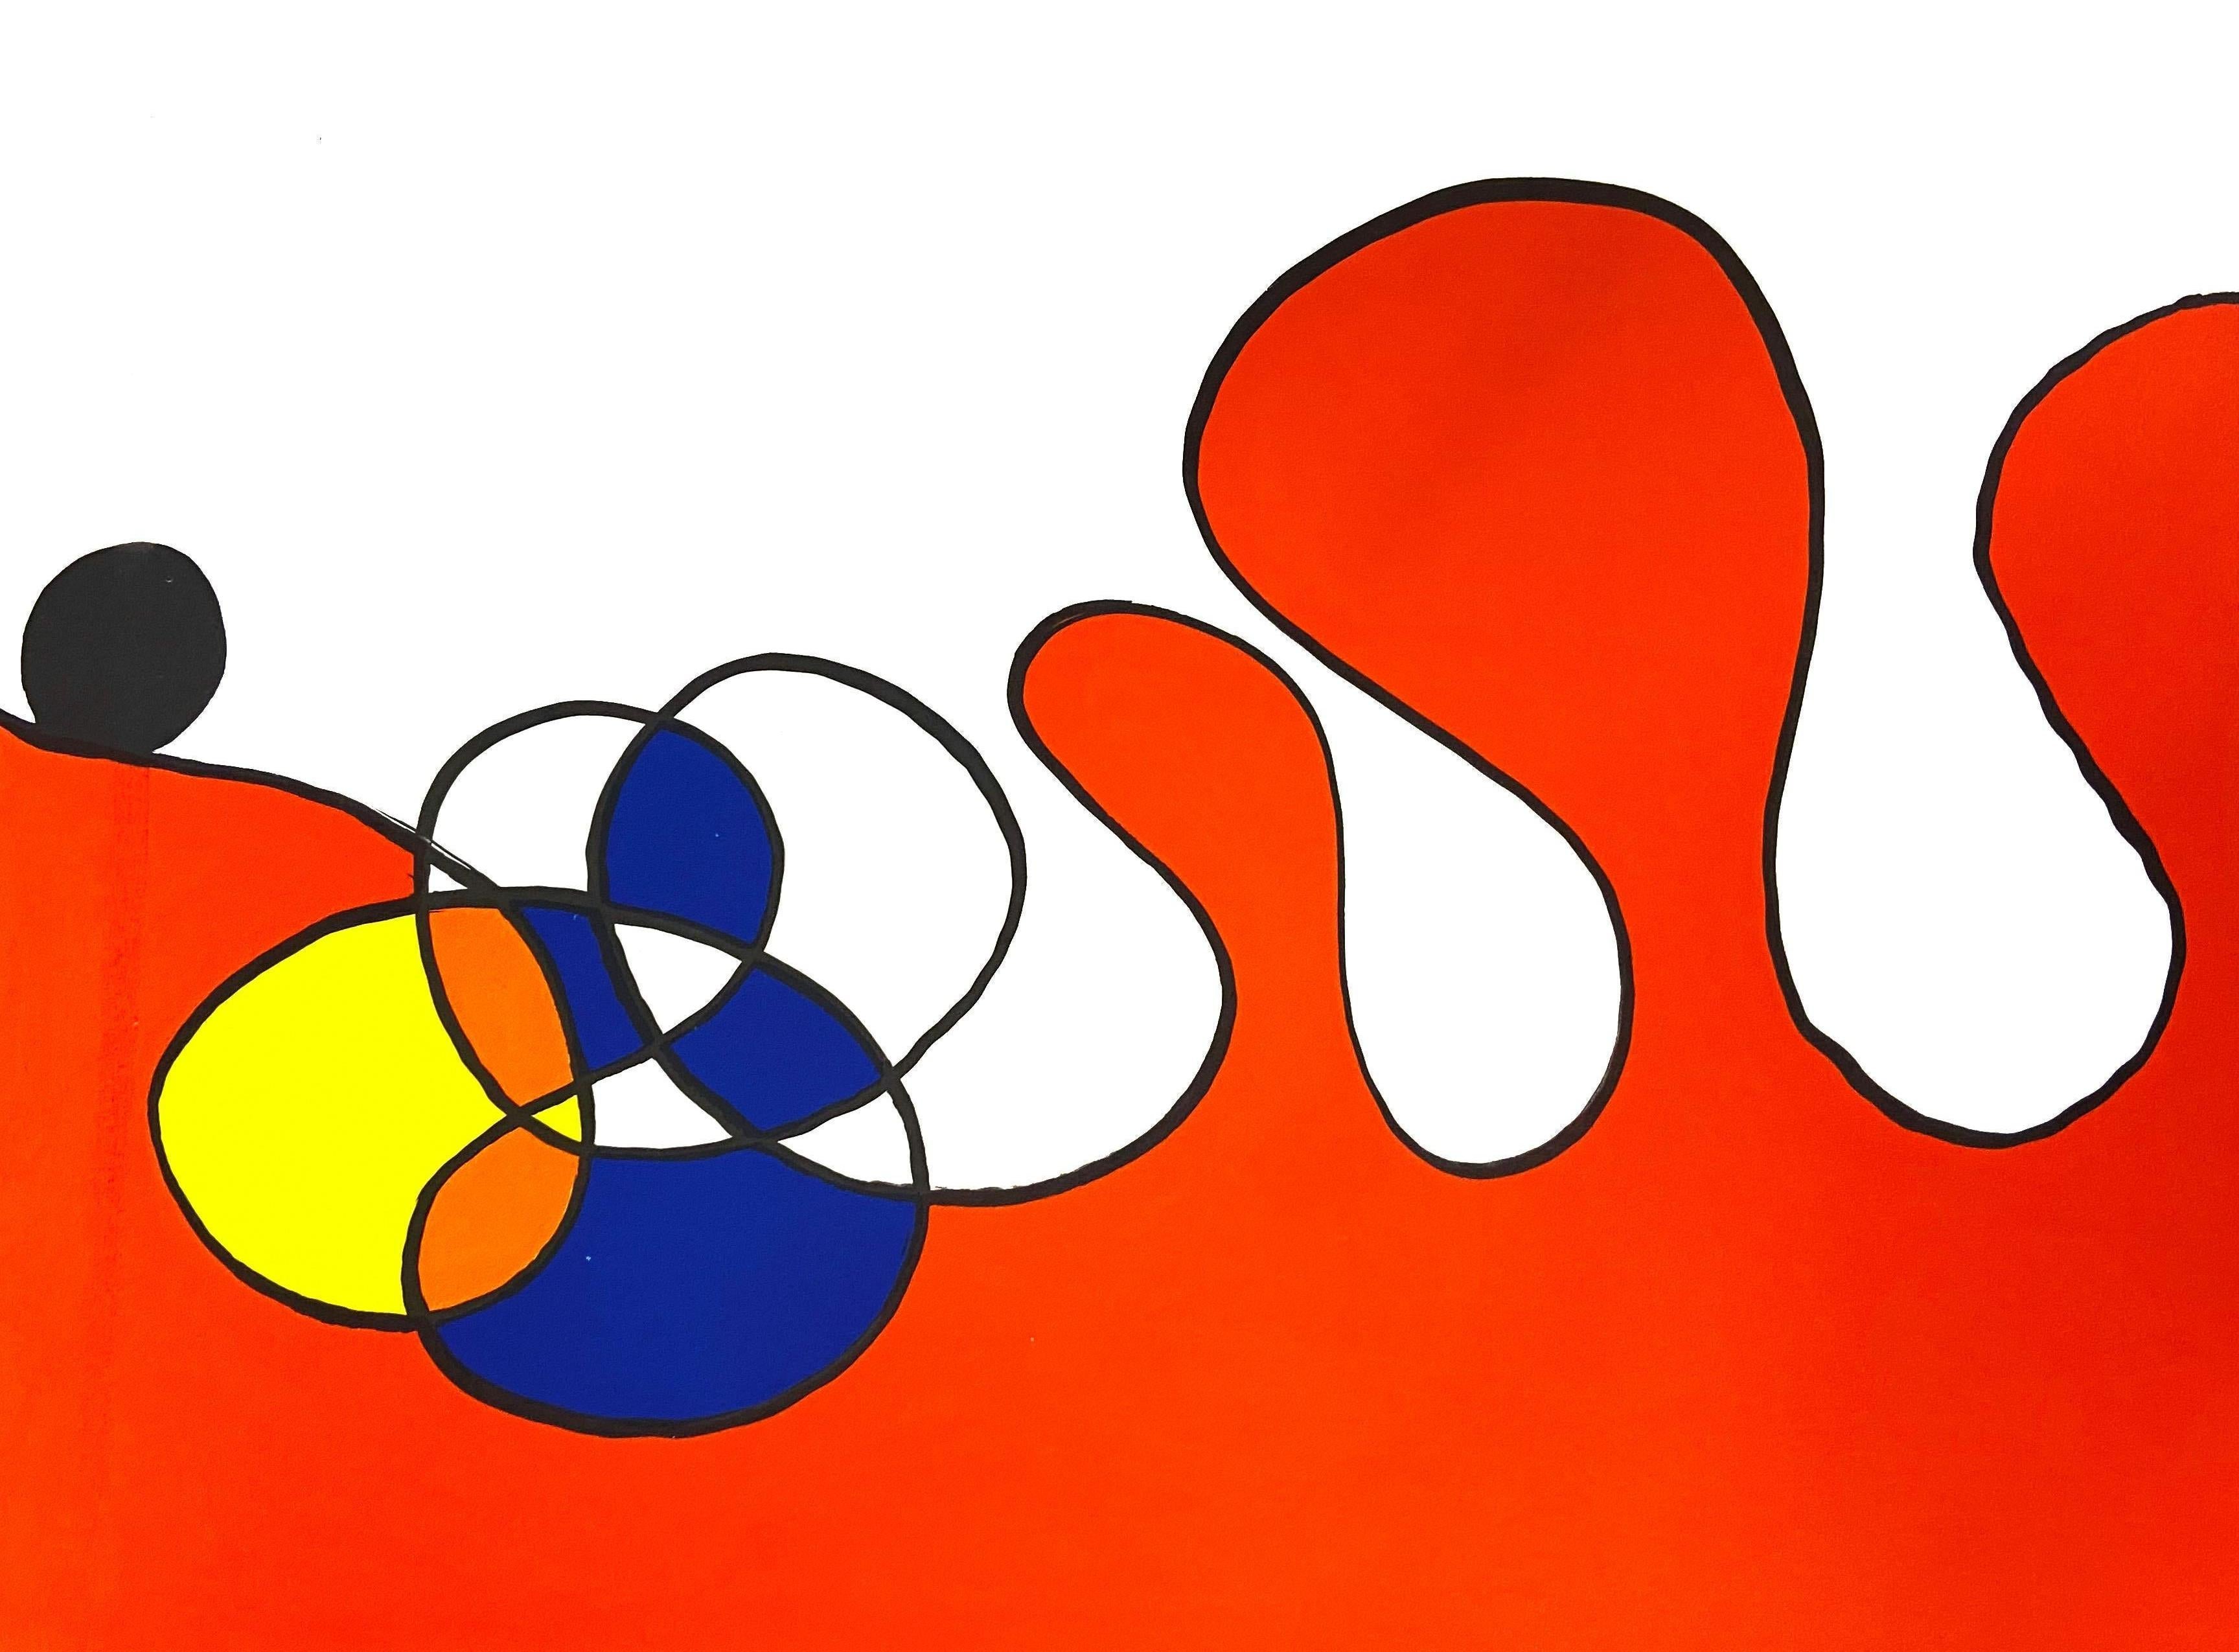 Alexander Calder Lithographie ca. 1967 aus Derrière le miroir:

Farblithographie; 15 x 11 Zoll.
Sehr guter Gesamtzustand; gut präpariert. 
Unsigniert aus einer unbekannten Auflage.
Von: Derrière le miroir Gedruckt in Frankreich ca. 1967. 

Derrière